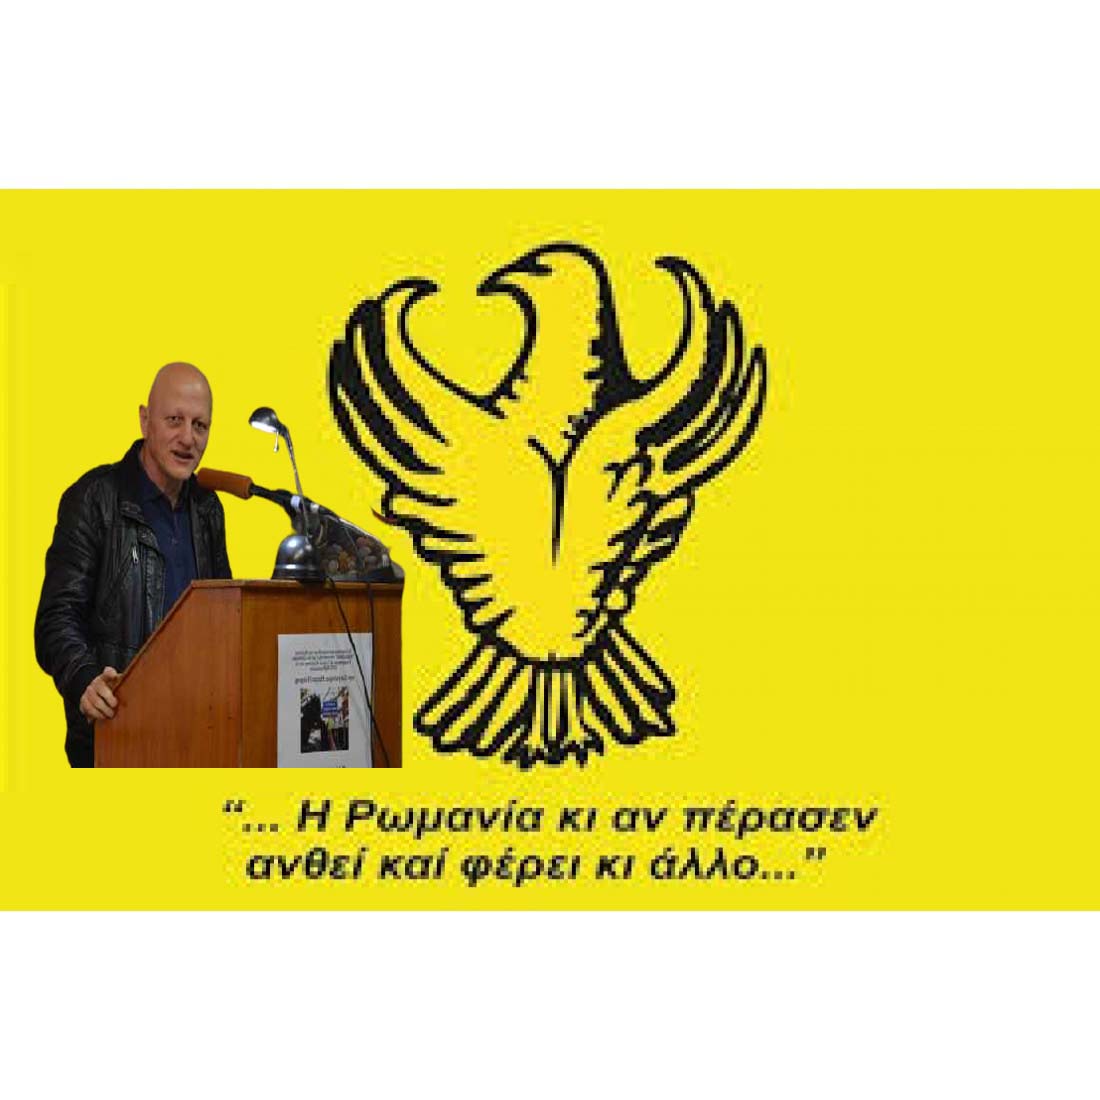 Ποντιακός Σύλλογος Πτολεμαΐδος - Νέος πρόεδρος ο Μαυρίδης Αντώνιος